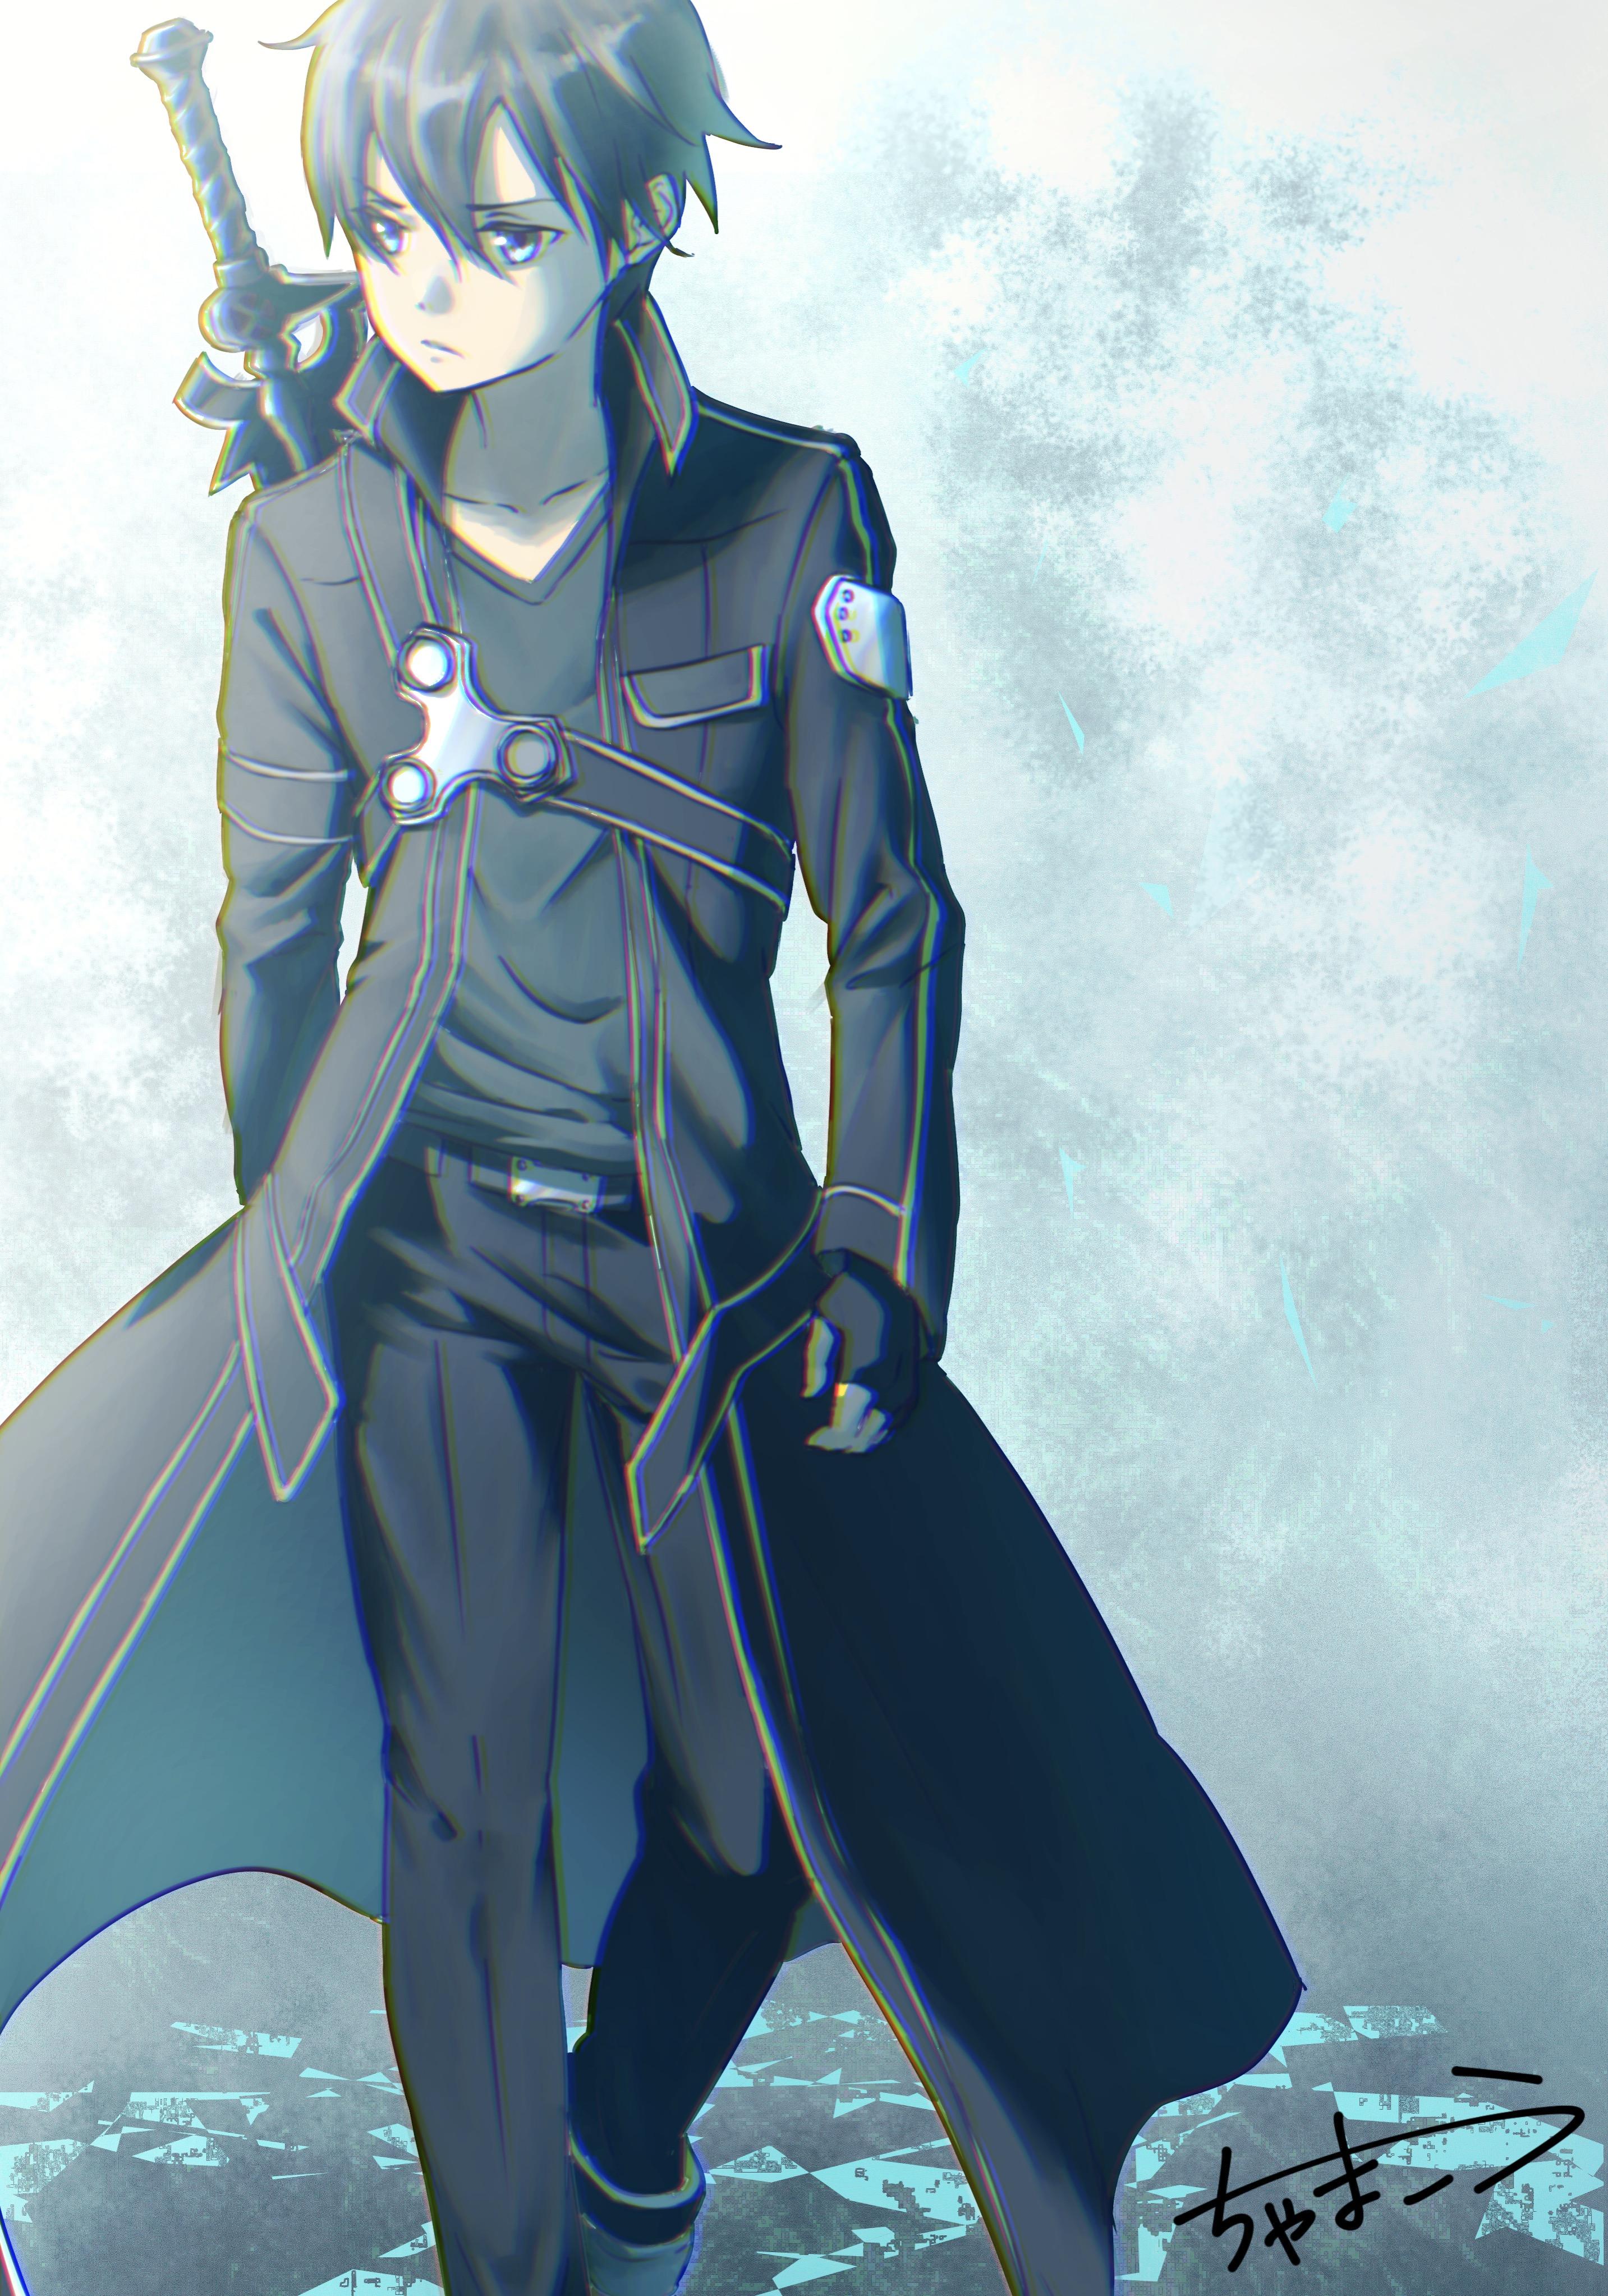 Hình ảnh Kirito mặc áo choàng dài với thanh kiếm sau lưng trông rất lãng mạn